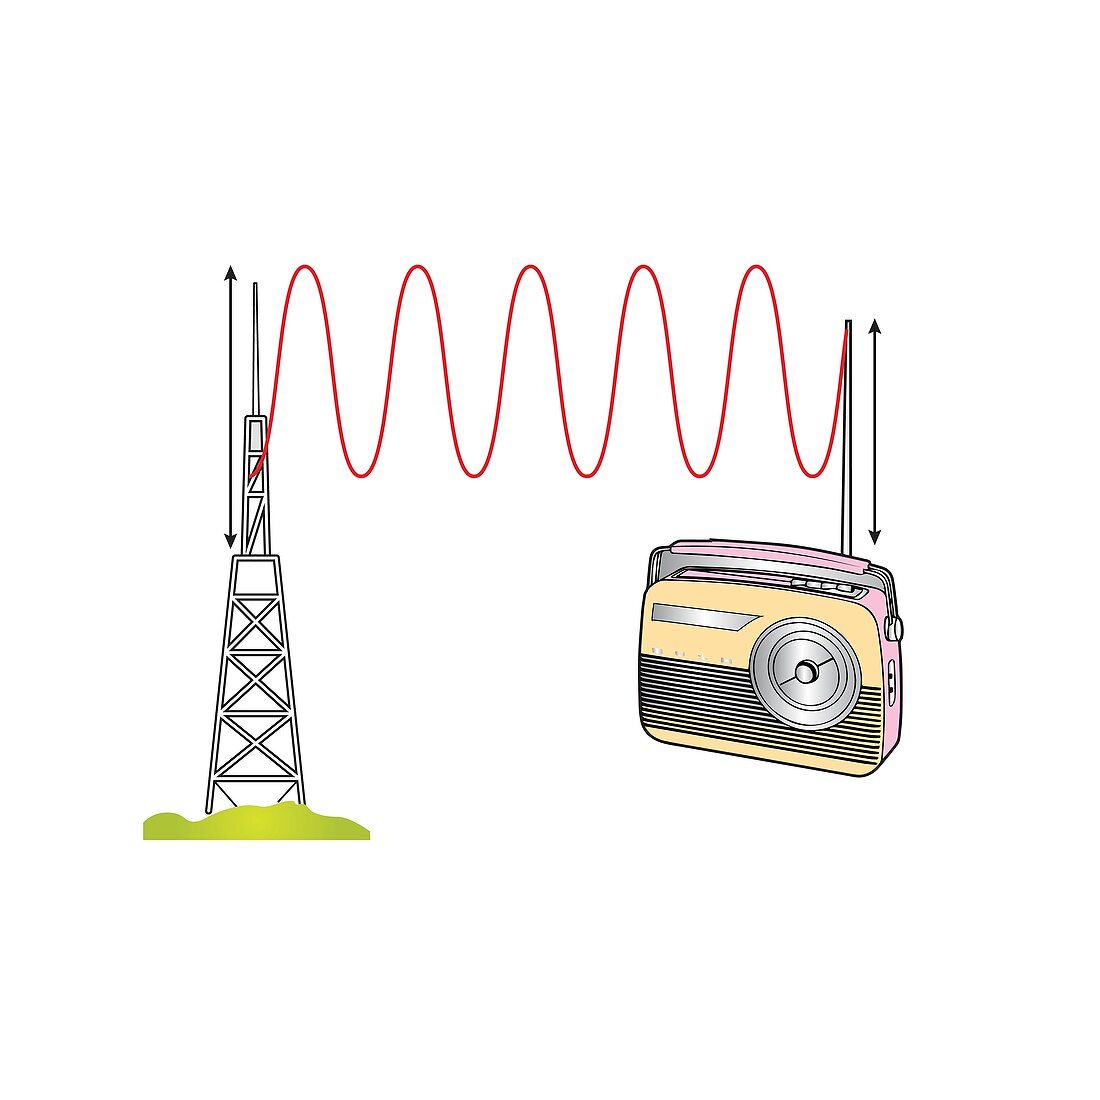 Radio waves, illustration